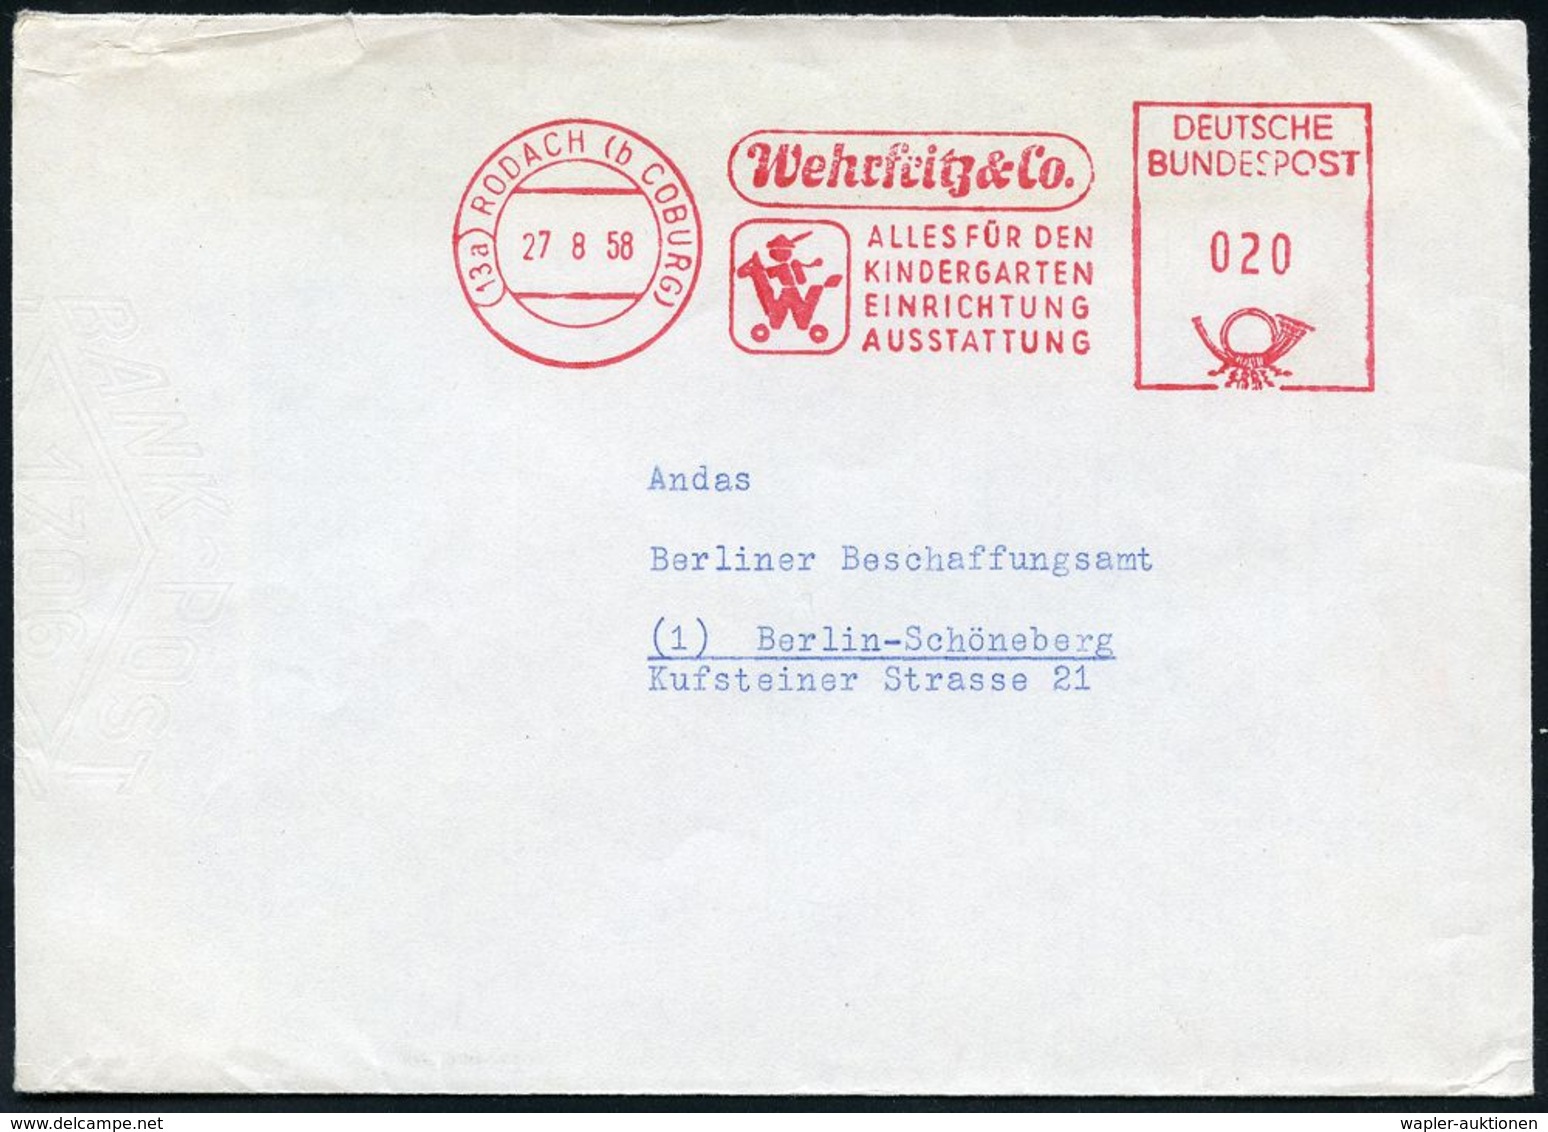 SPIELZEUG / SPIELZEUGMESSEN : (13a) RODACH (b COBURG)/ Wehrfrotz & Co/ ALLES FÜR DEN/ KINDERGARTEN.. 1958 (27.8.) Dekora - Ohne Zuordnung